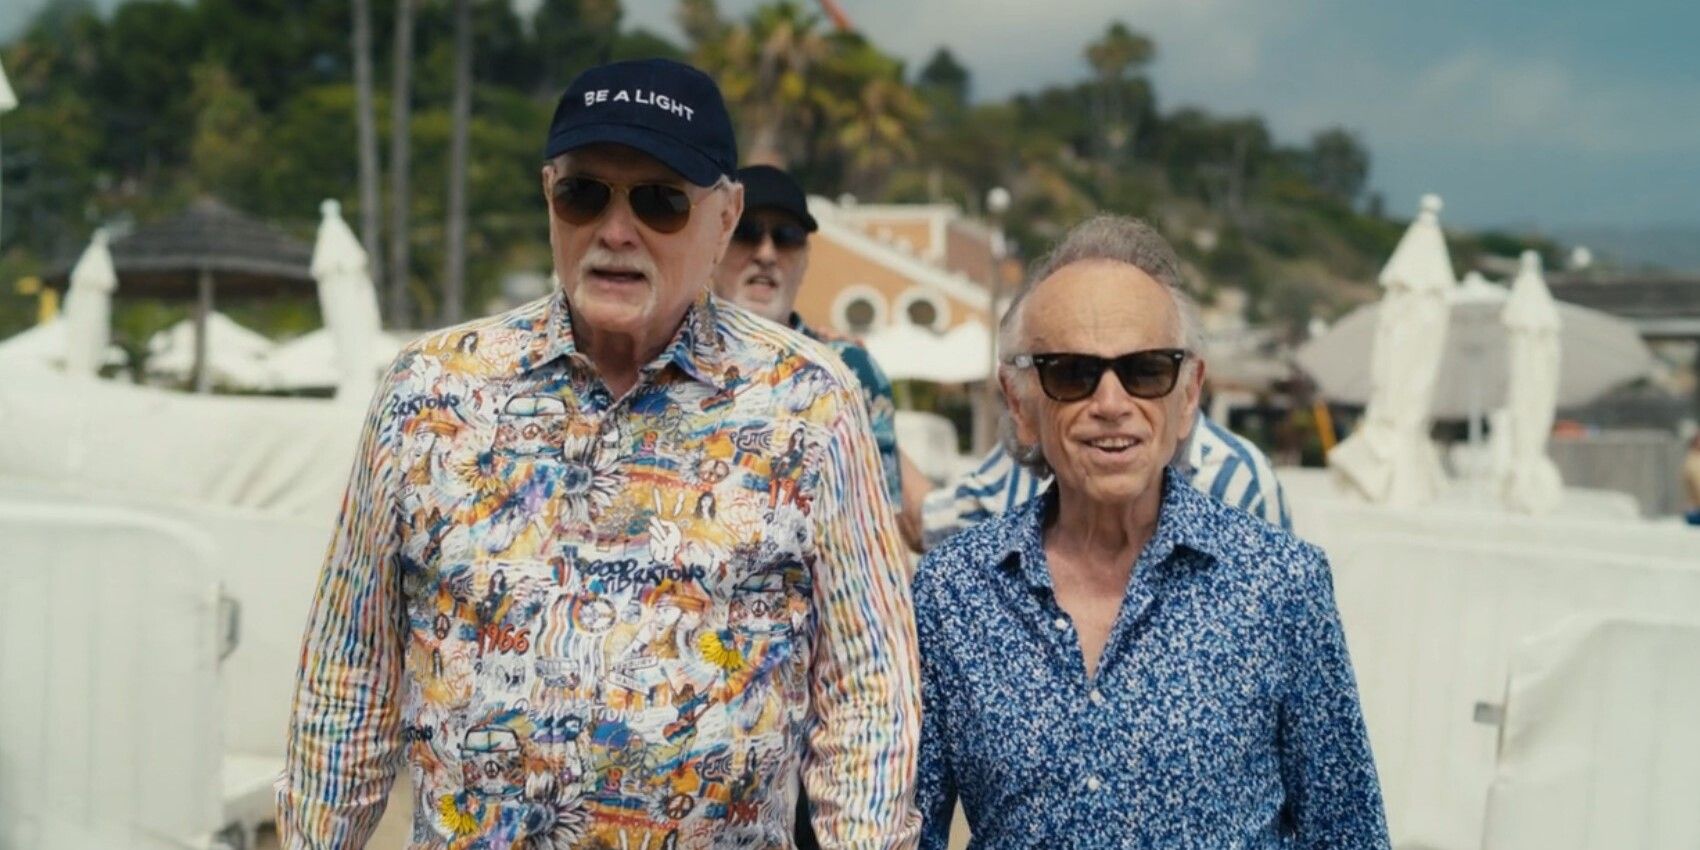 Объяснение истории Beach Boys с Чарльзом Мэнсоном (и что, по данным Disney+, произошло)